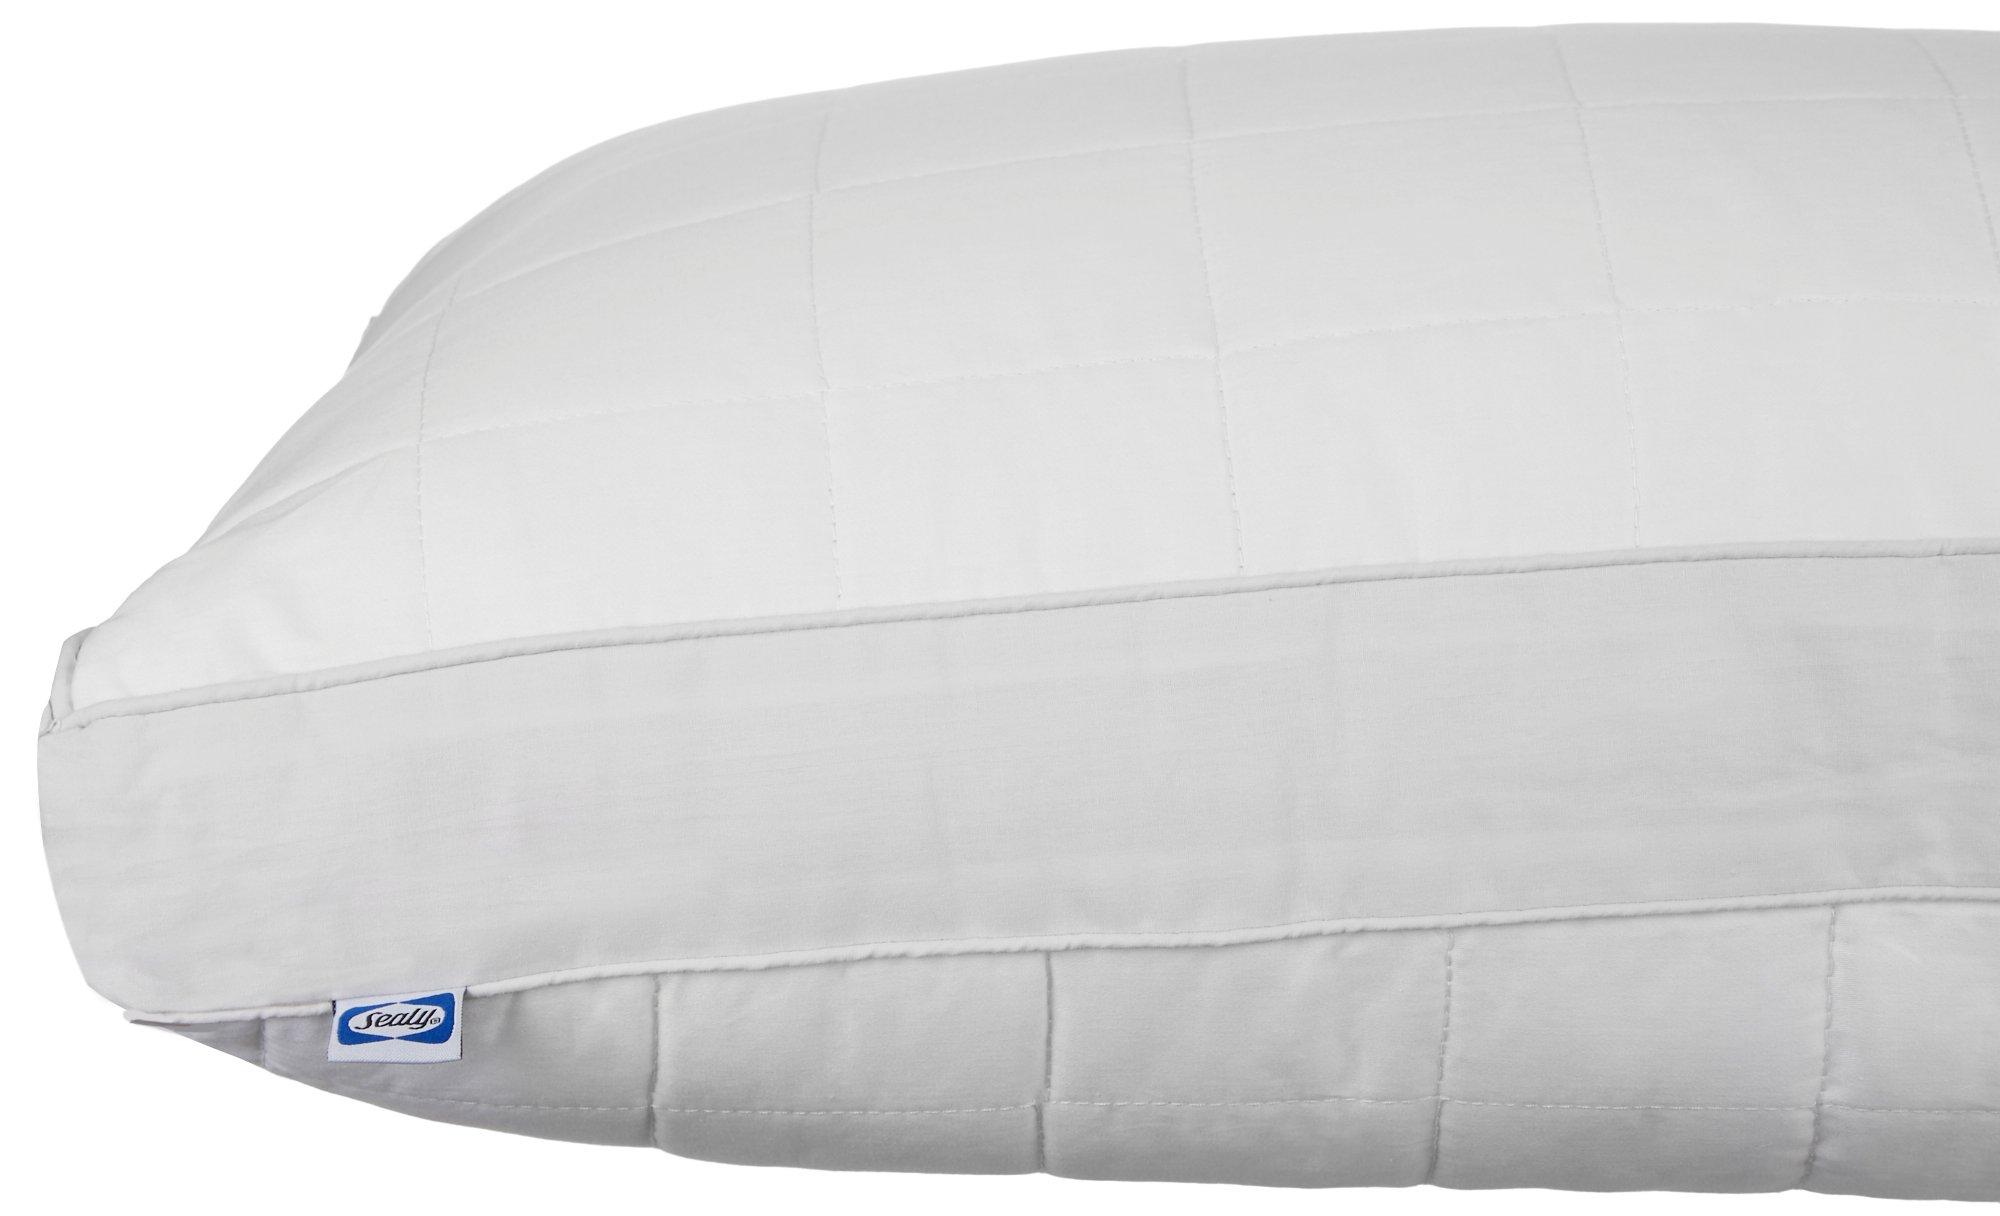 sealy extra firm pillow top mattress